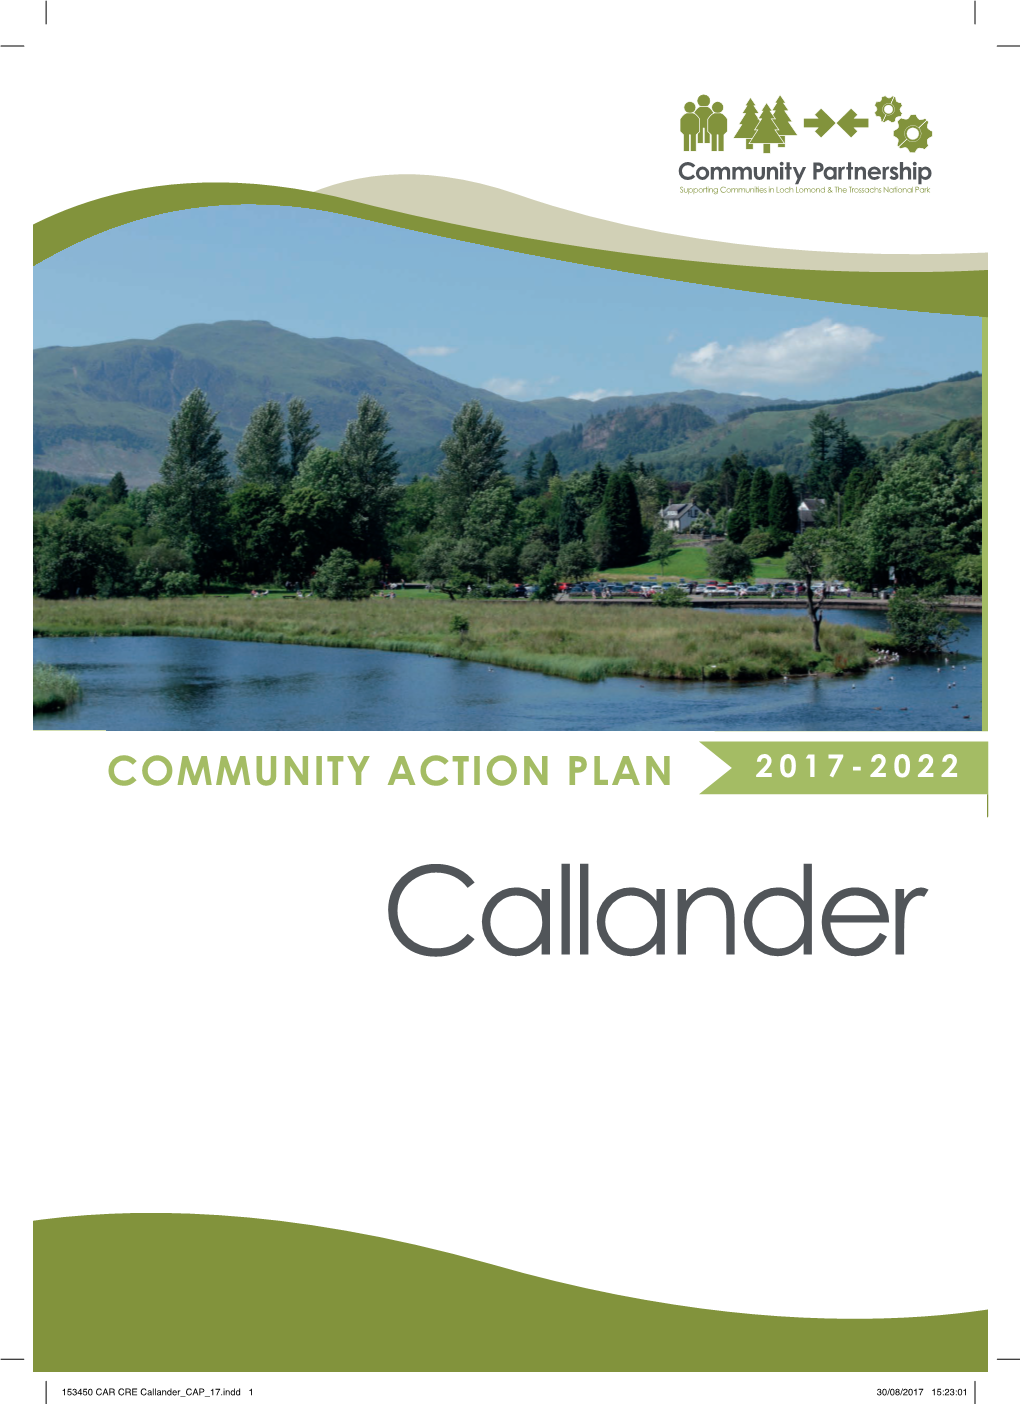 Callander Community Action Plan 2017-2022